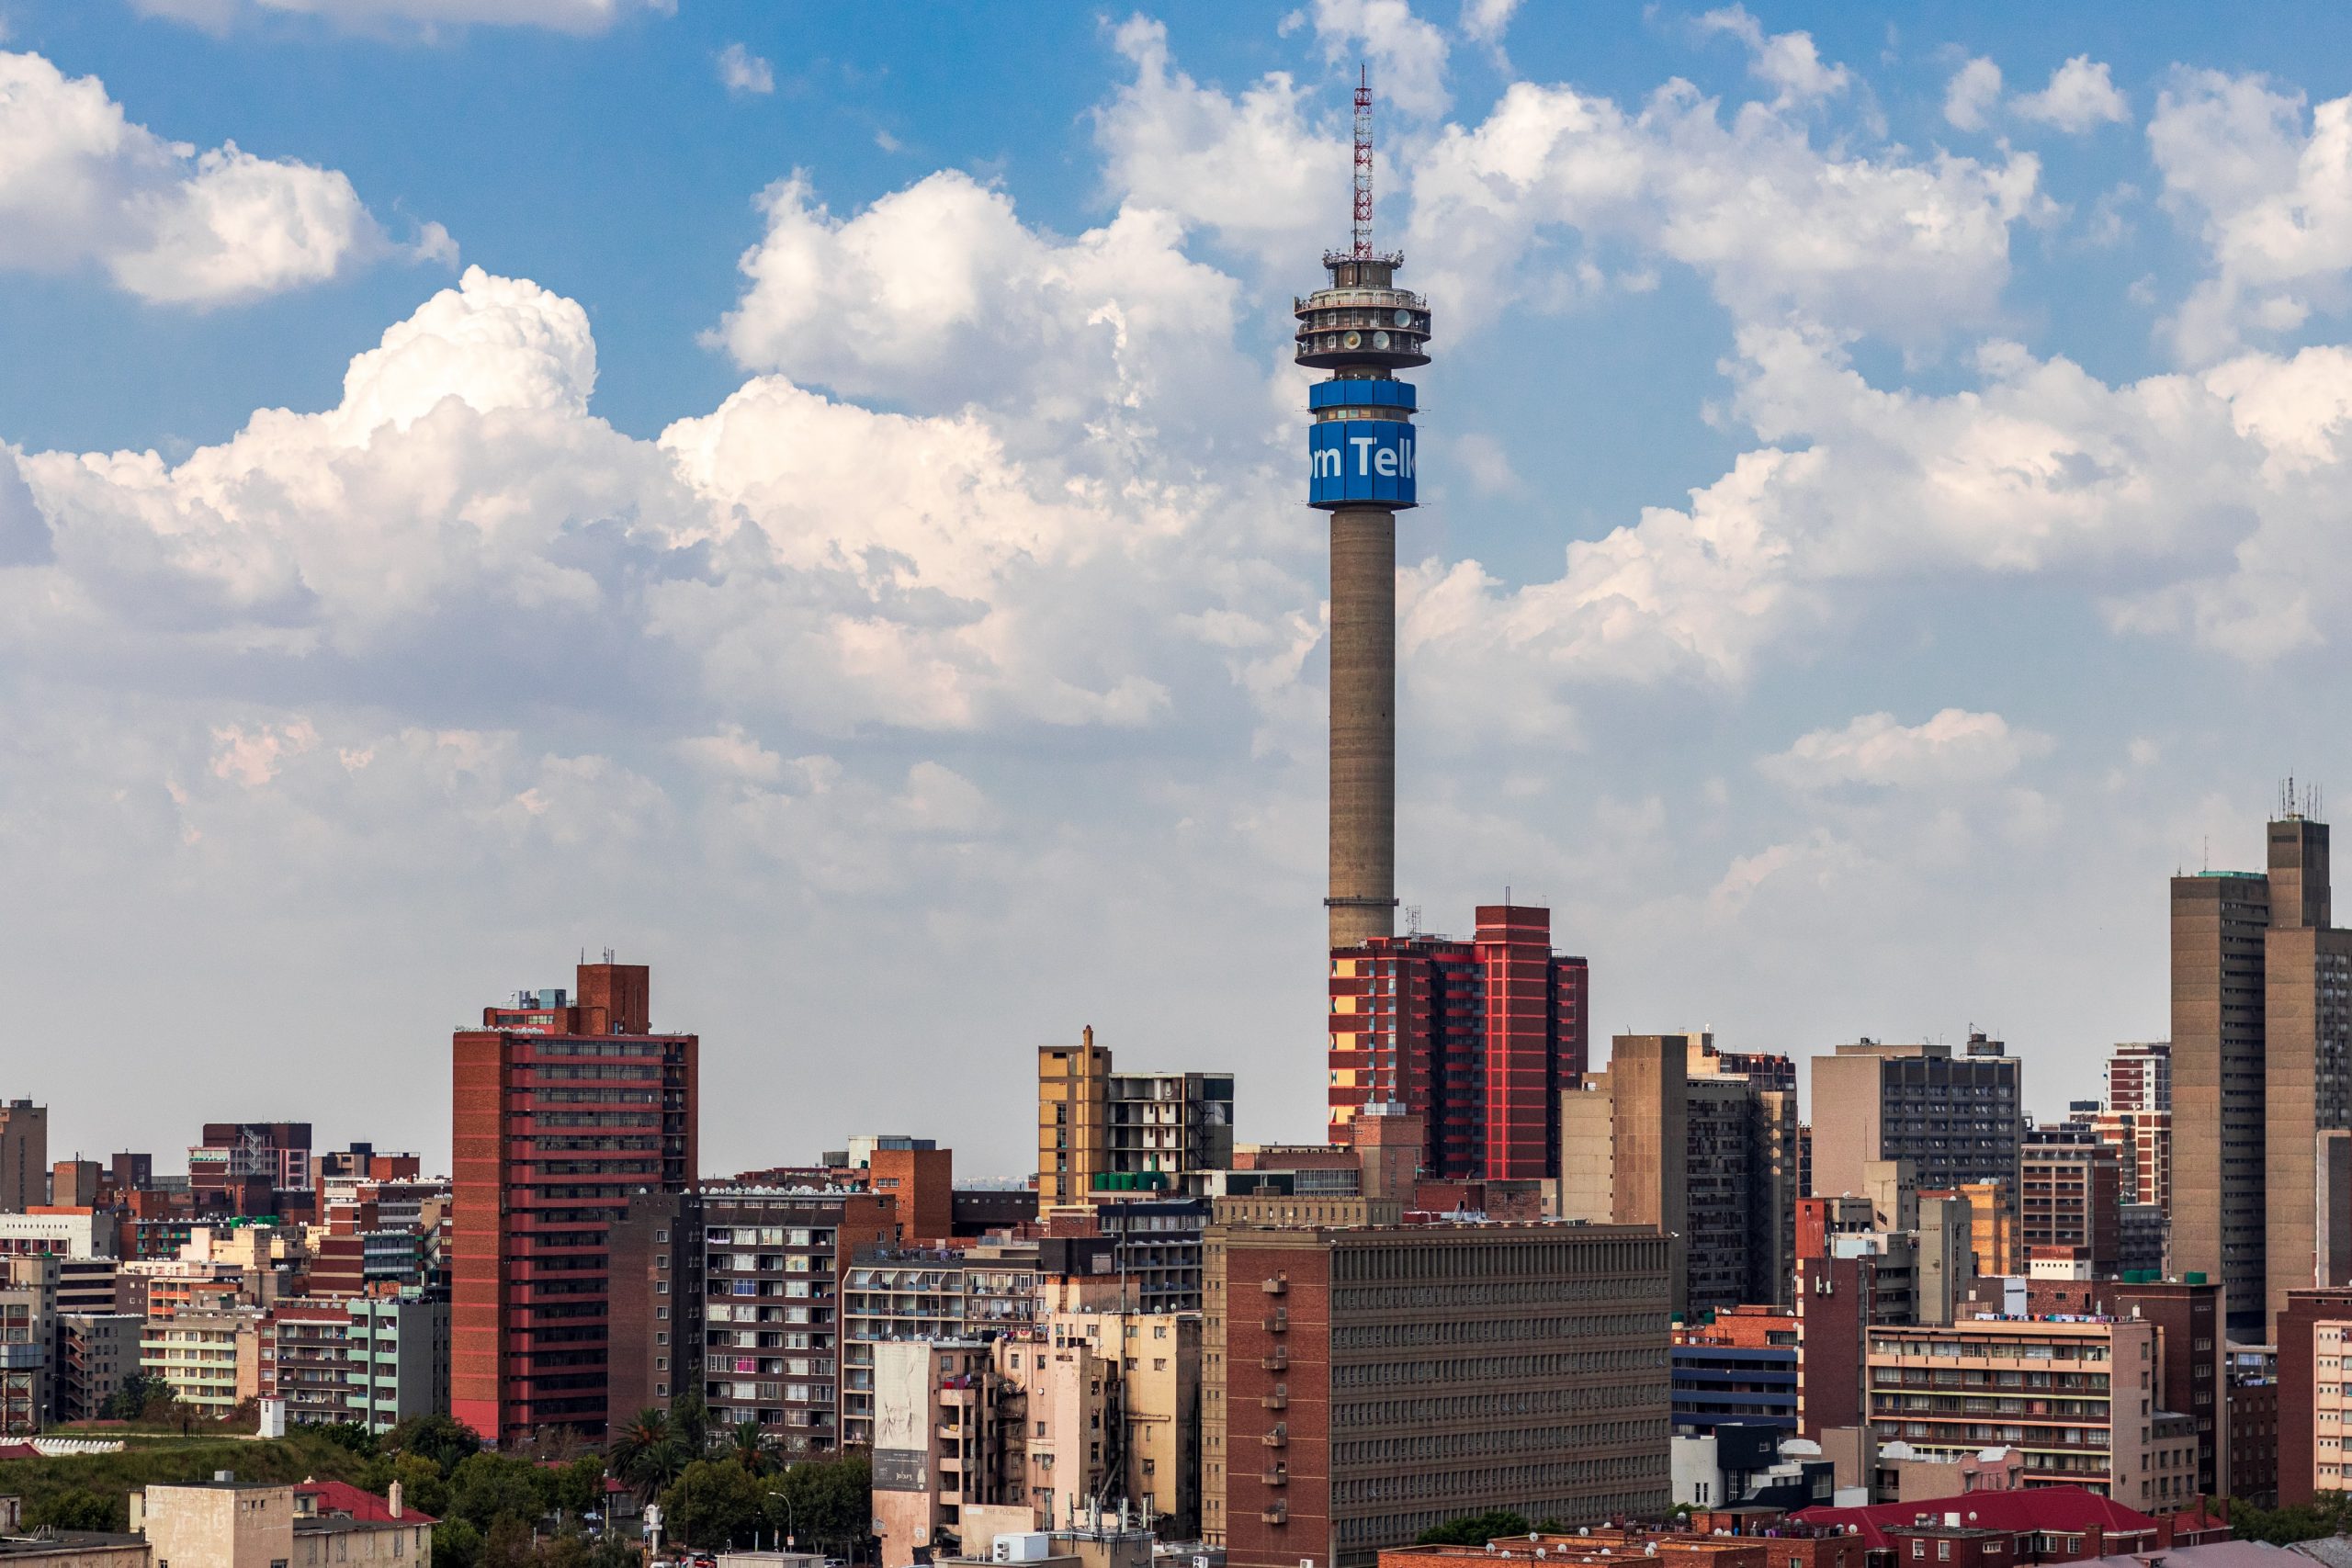 Johannesburg skyline, South Africa